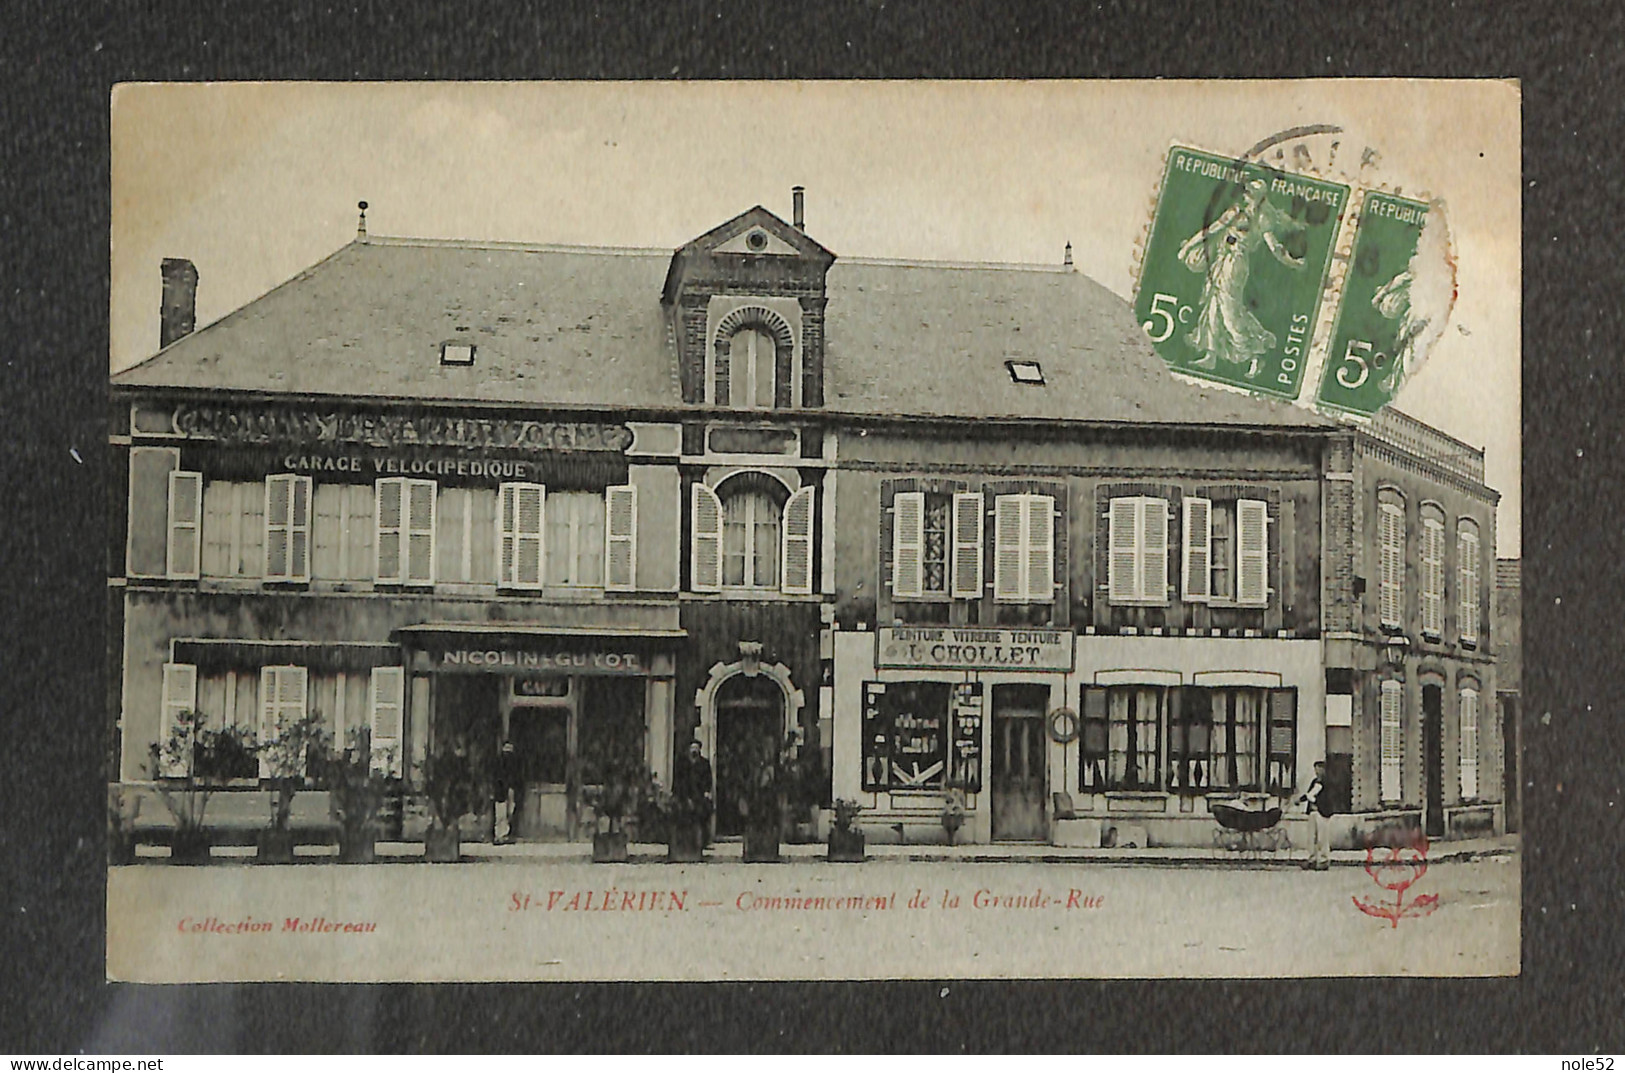 10€ : Commencement De La Grande-Rue - Saint Valerien